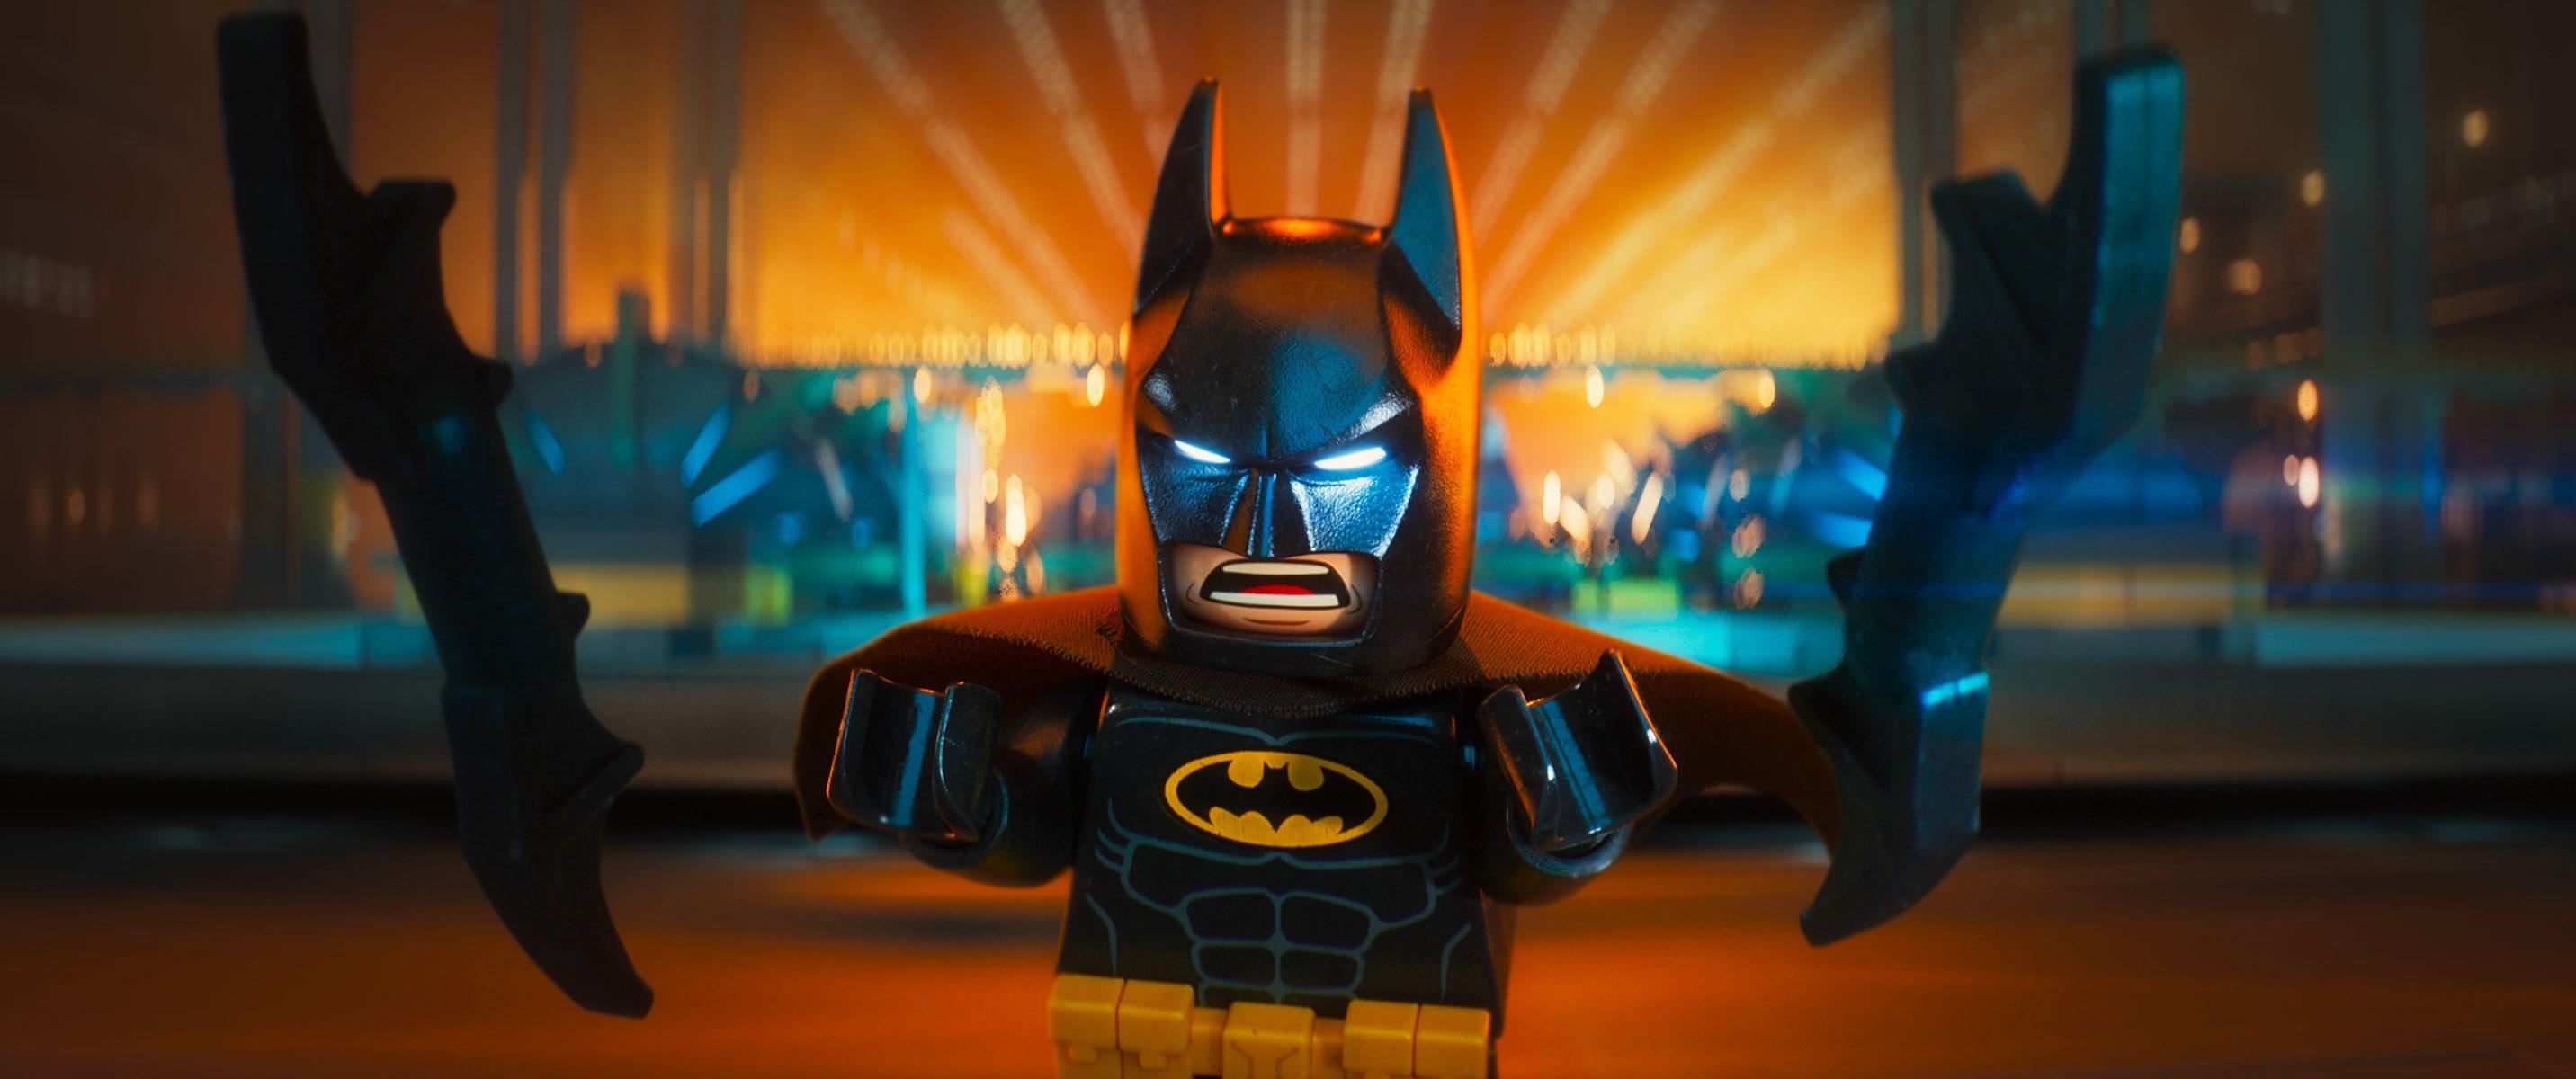 Lego Batman Movie wallpaper 7, Attractive design, HD resolution, Impressive visuals, 2870x1200 Dual Screen Desktop